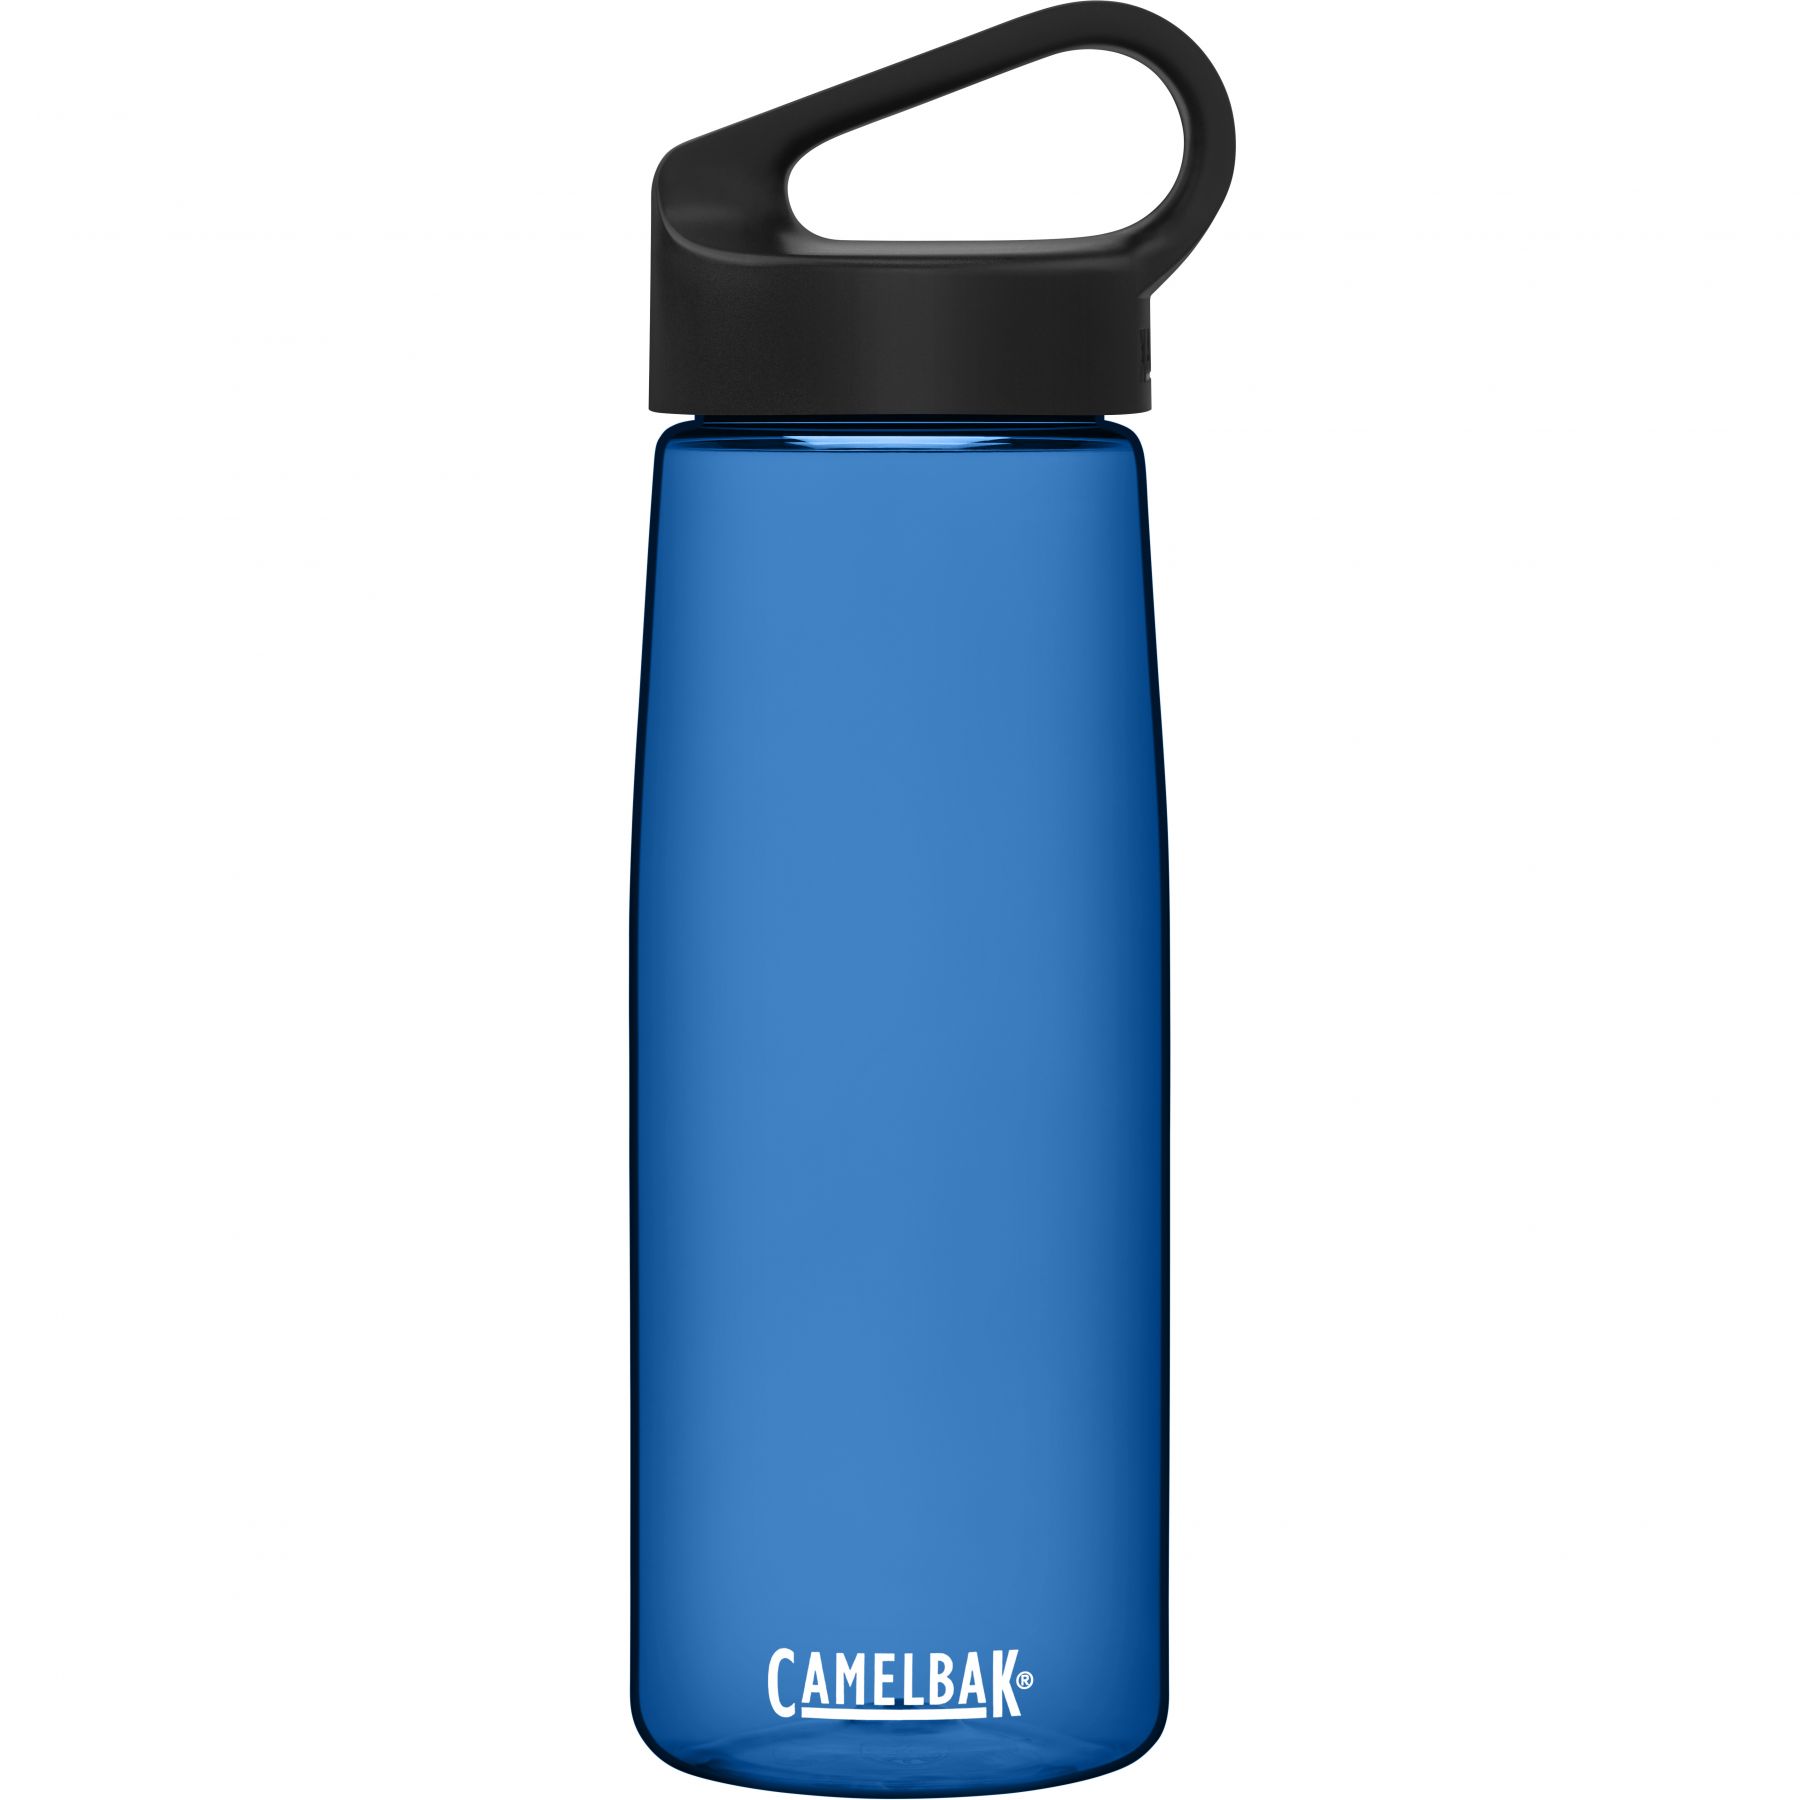 Billede af CamelBak Carry Cap, drikkedunk, 0,75L, blå hos AktivVinter.dk